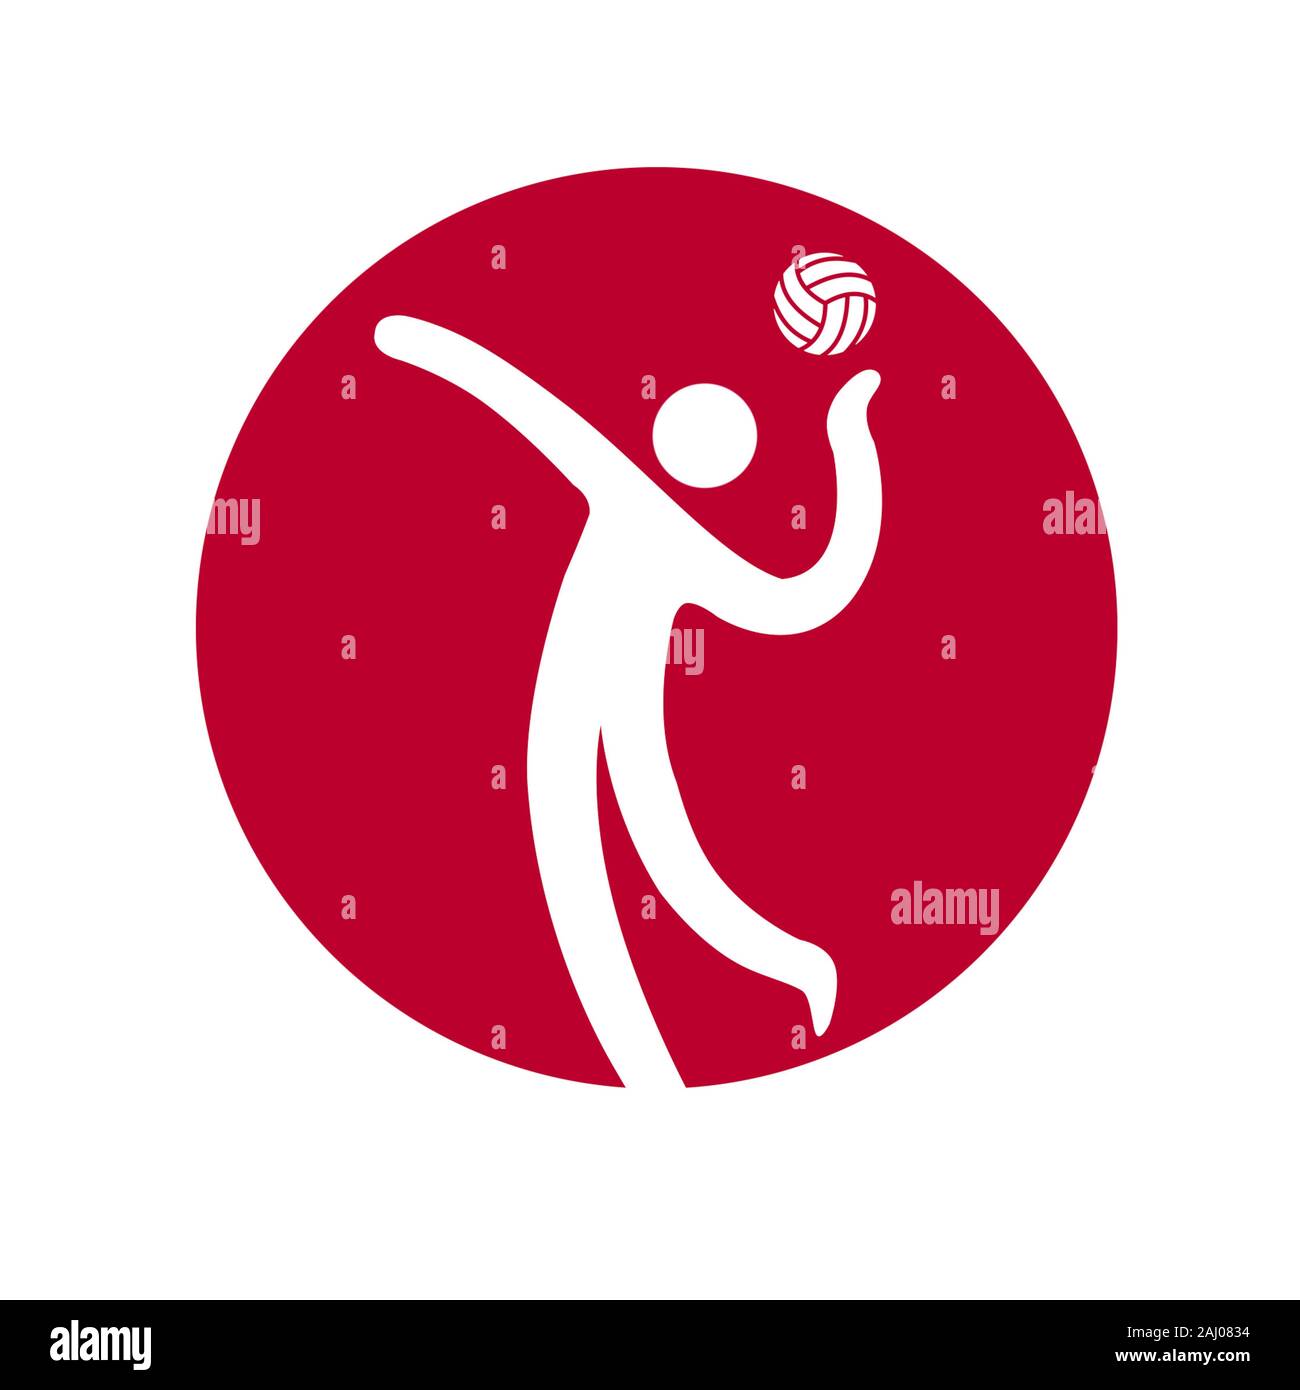 Volleyball professionnel Banque d'images détourées - Alamy